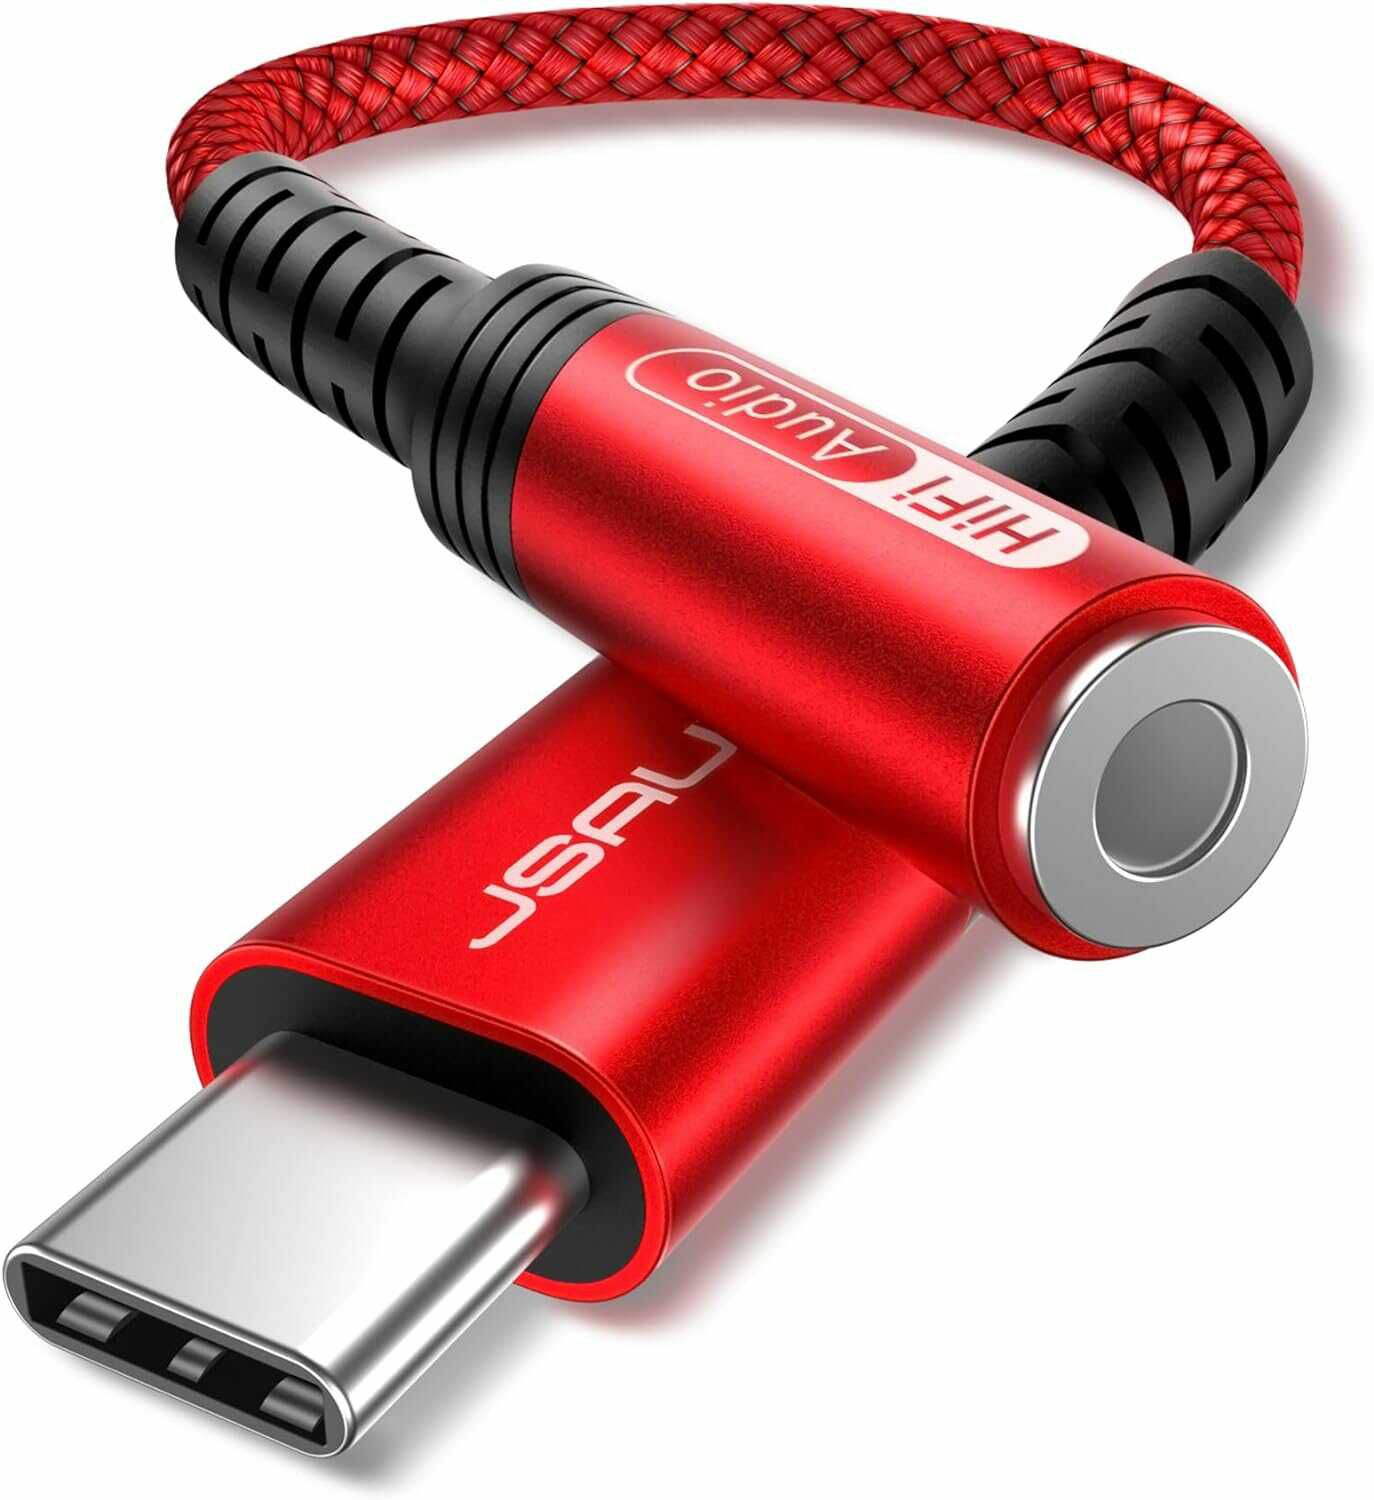 Adapter von USB C auf 3,5mm Klinke für 4,94€ statt 8,98€